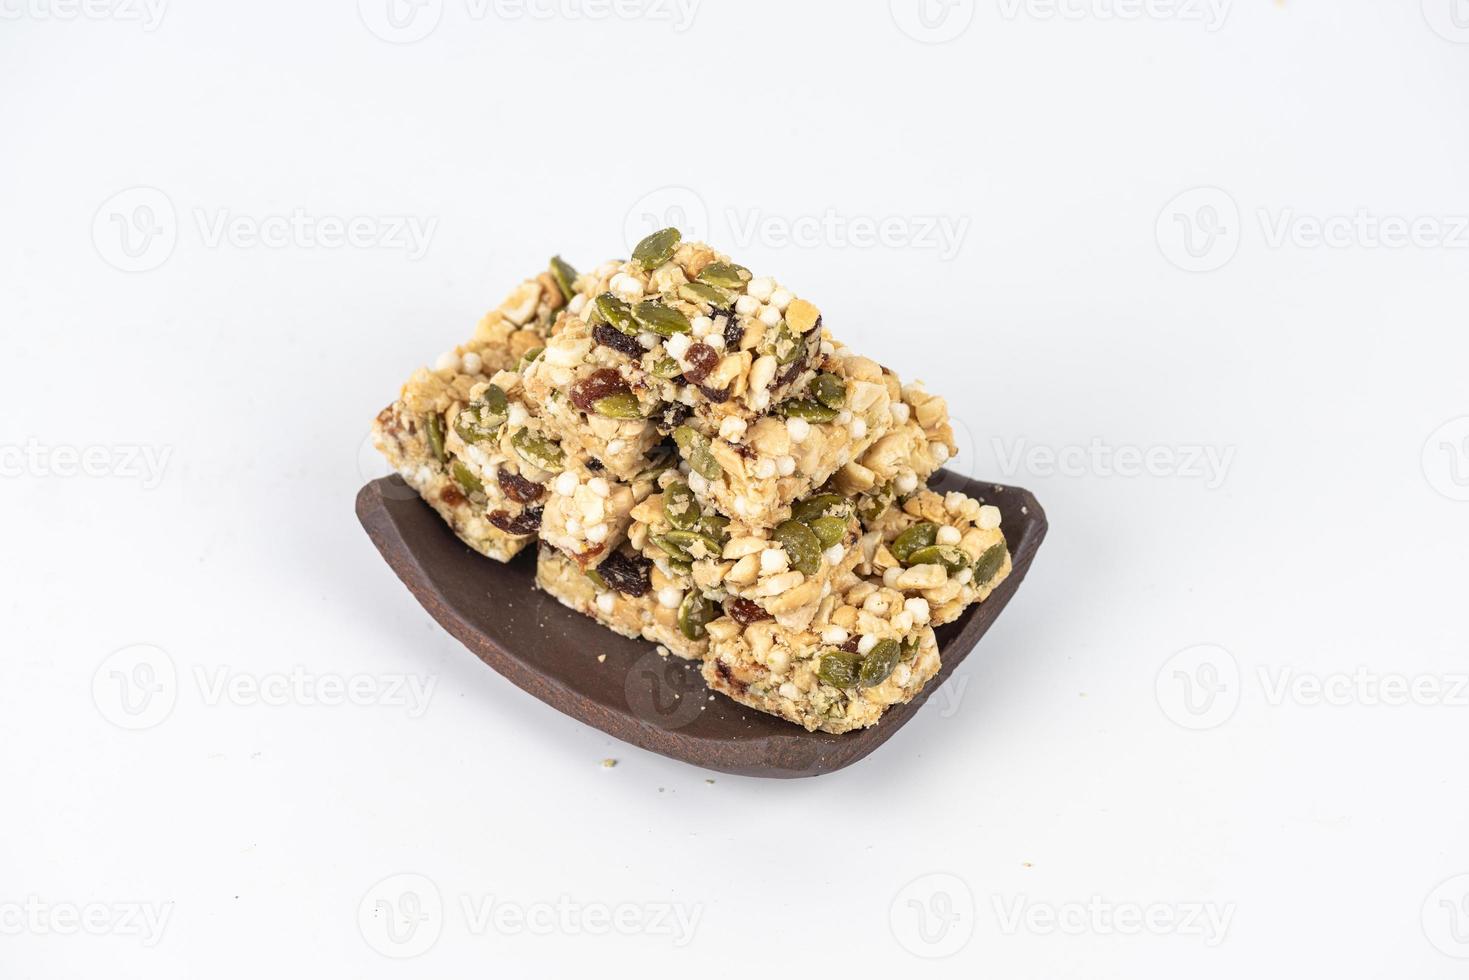 desserts gemaakt van pinda's, meloenzaden, rozijnen, cashewnoten en walnoten zijn op een witte achtergrond foto